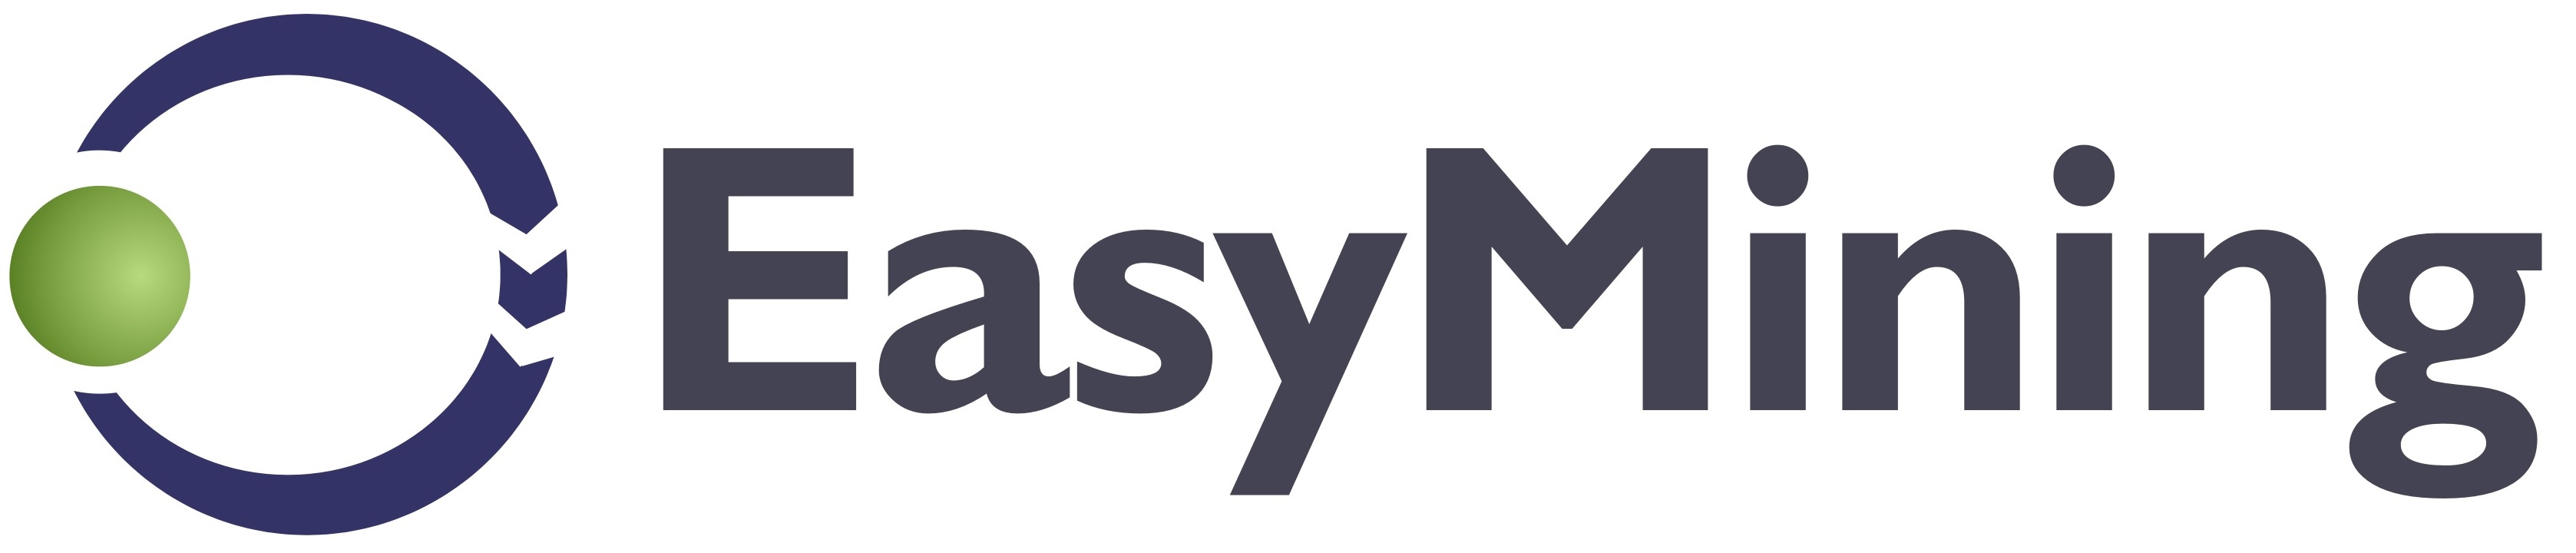 Easymining logo